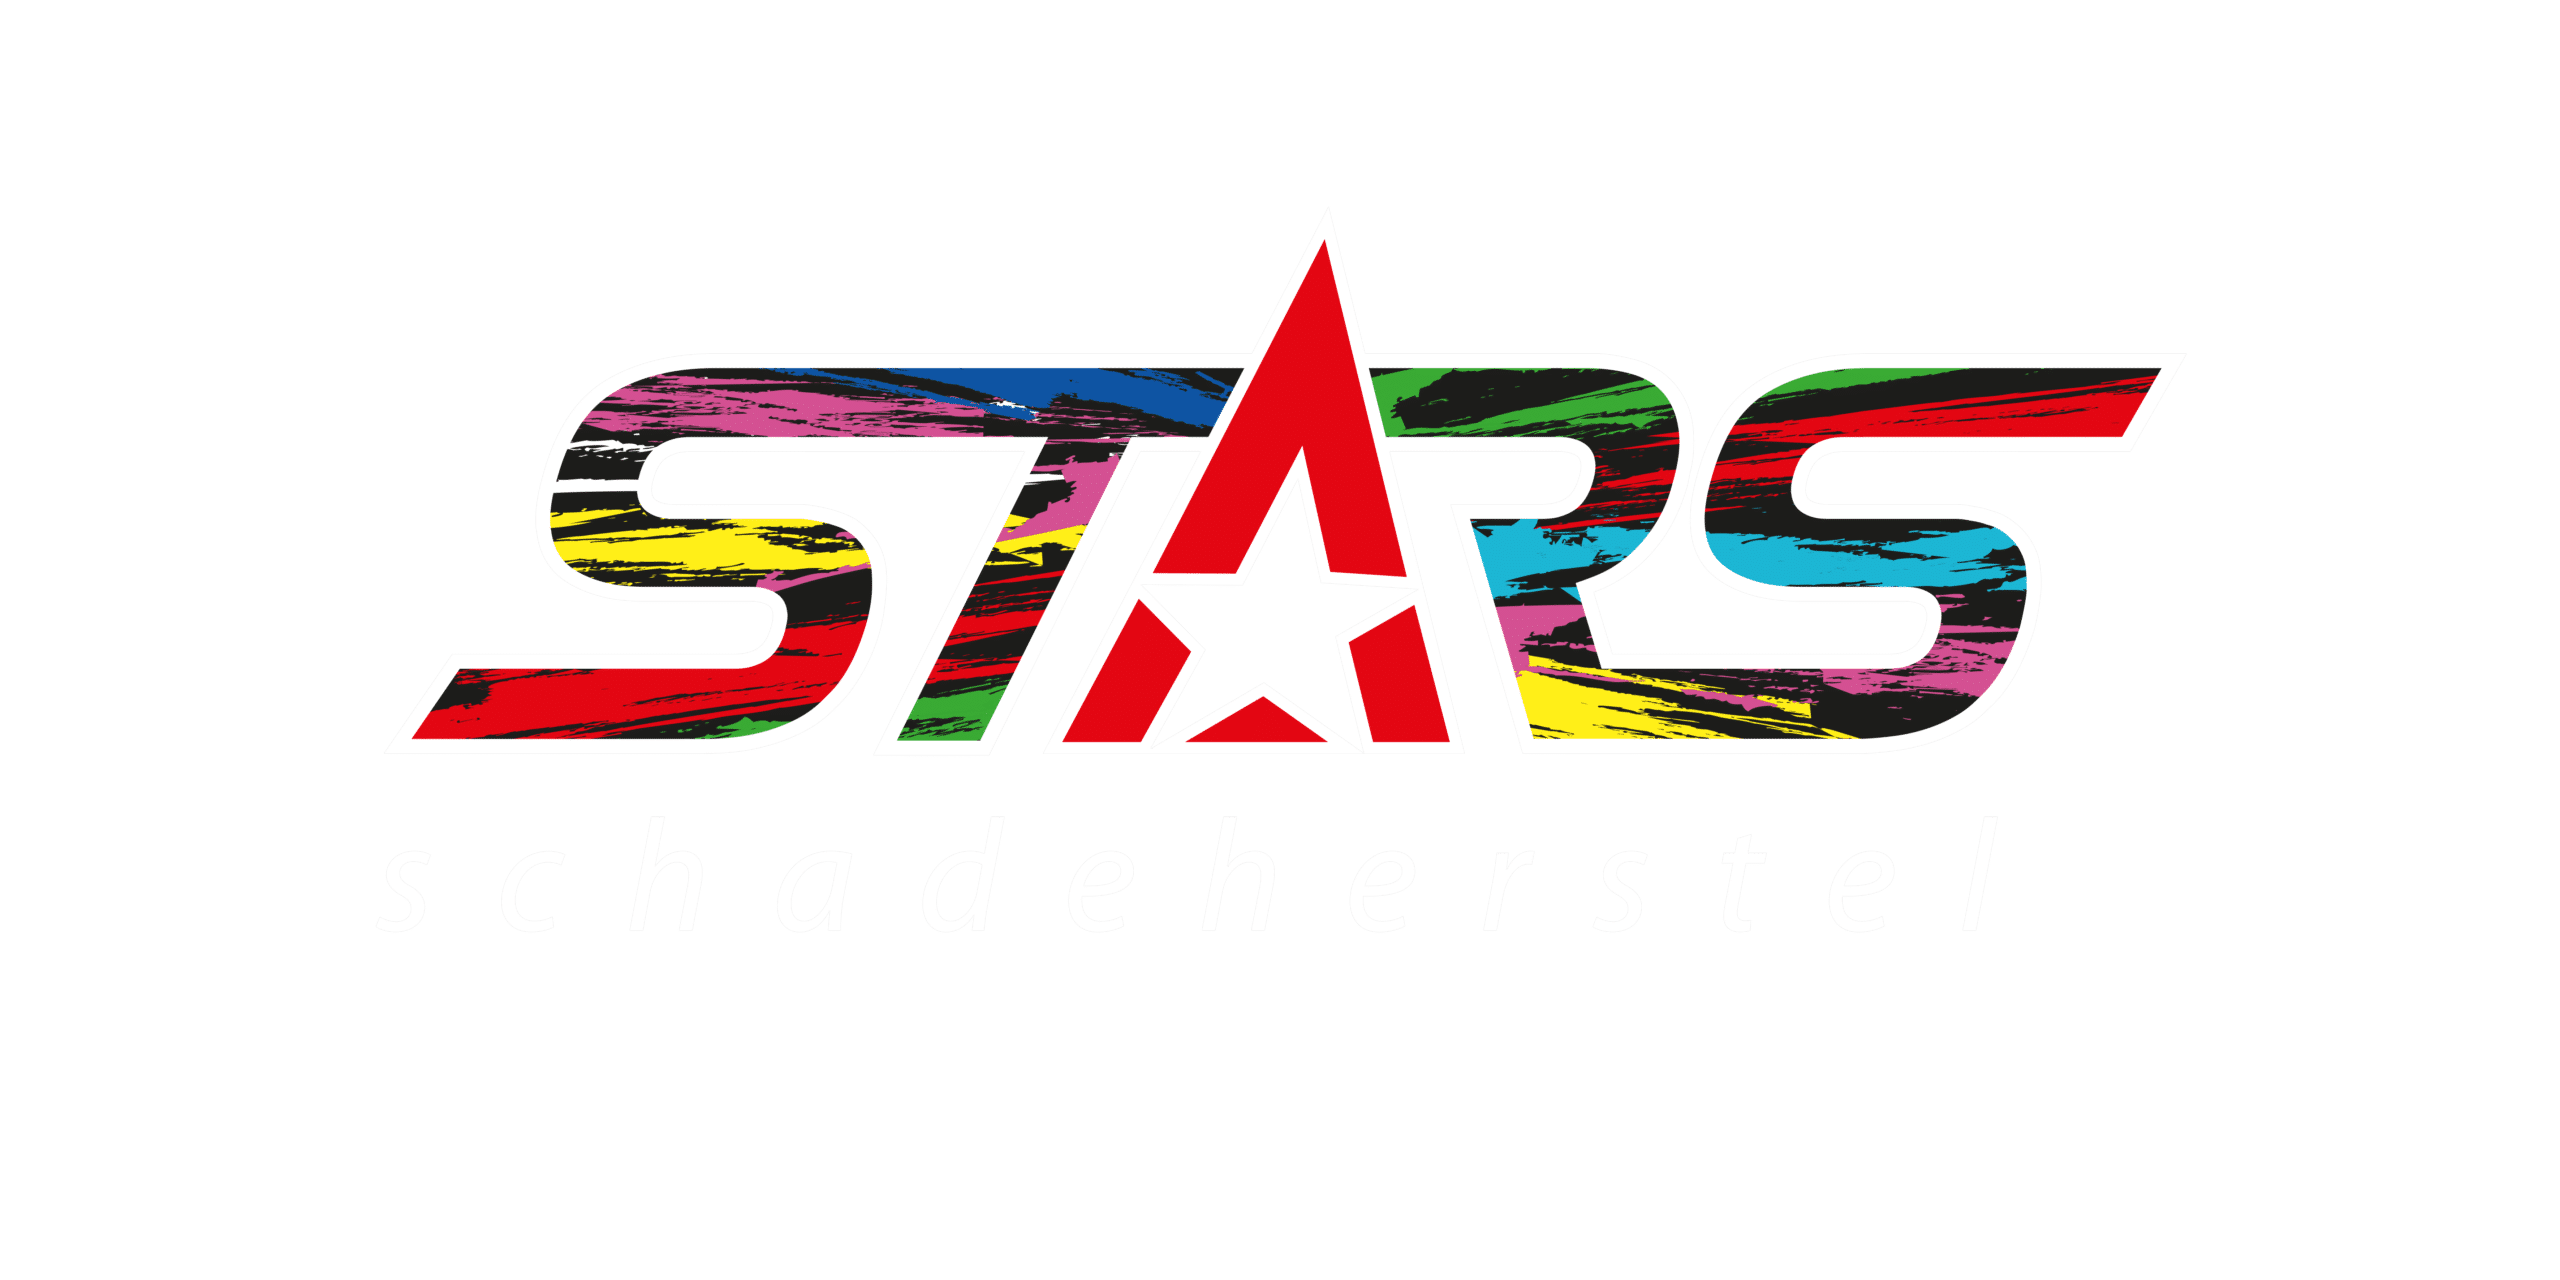 STARS Schadeherstel